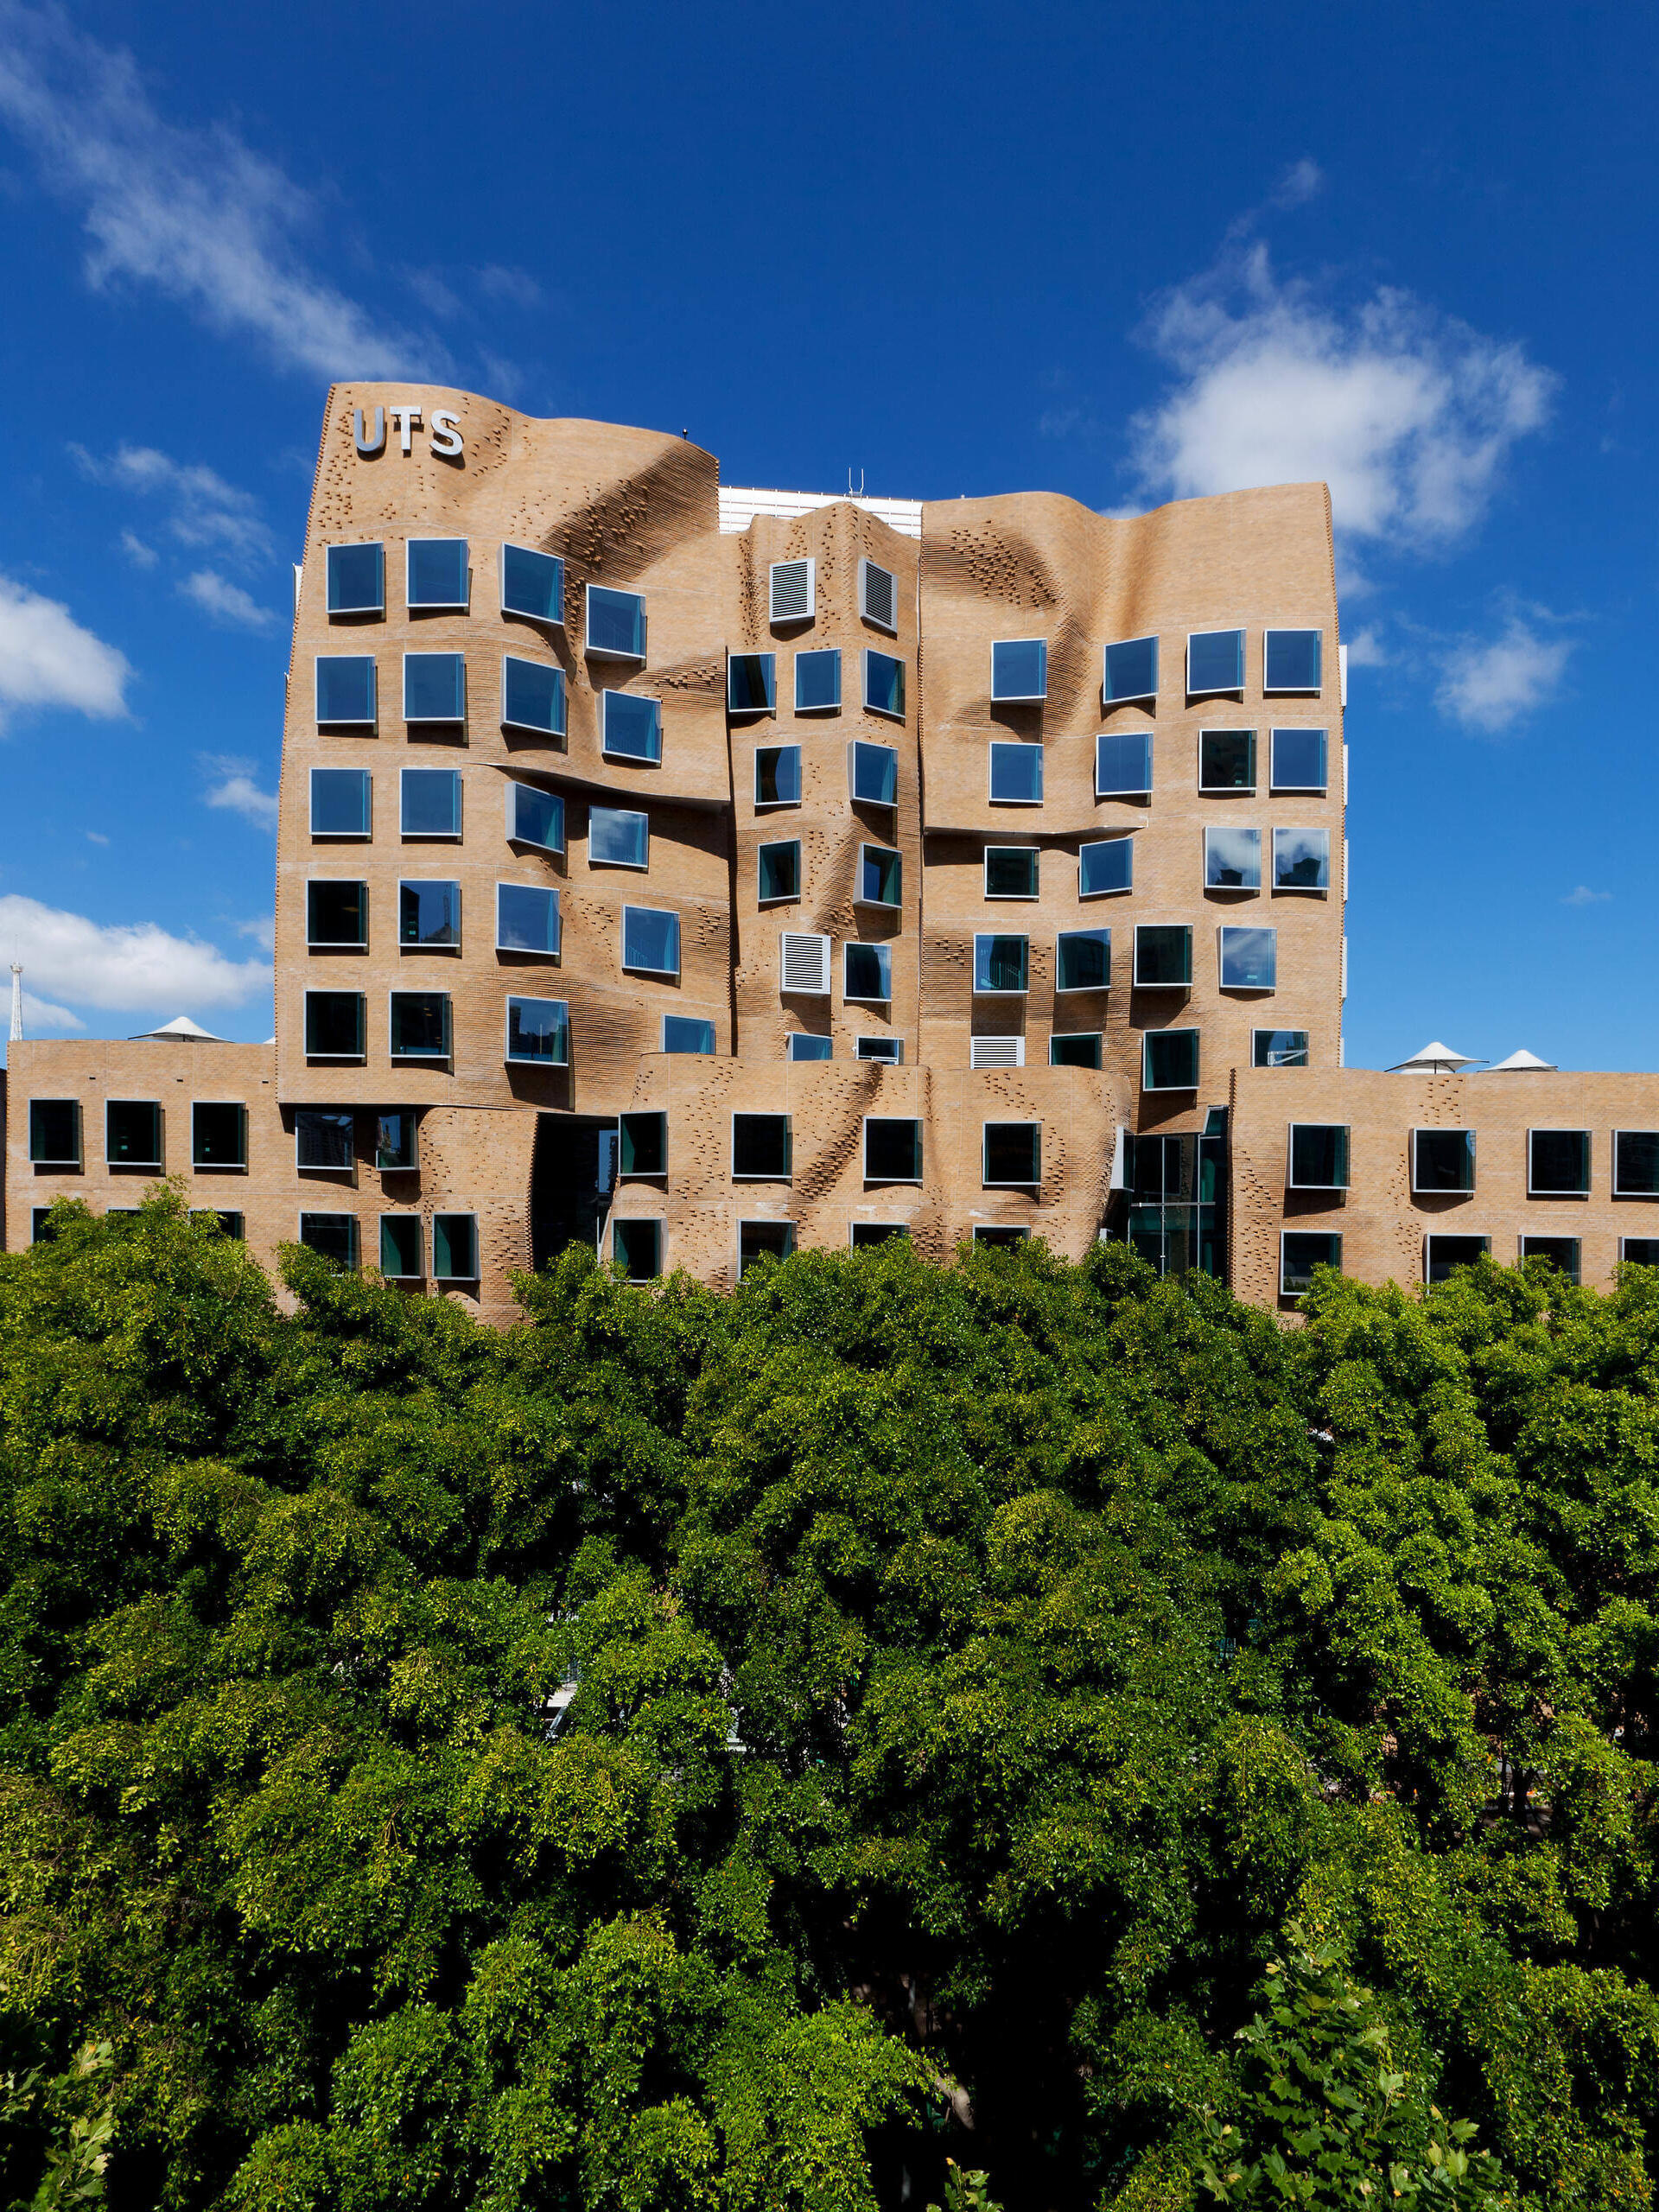 Dr Chau Chak Wing Gebäude auf dem Campus UTS in Sydney